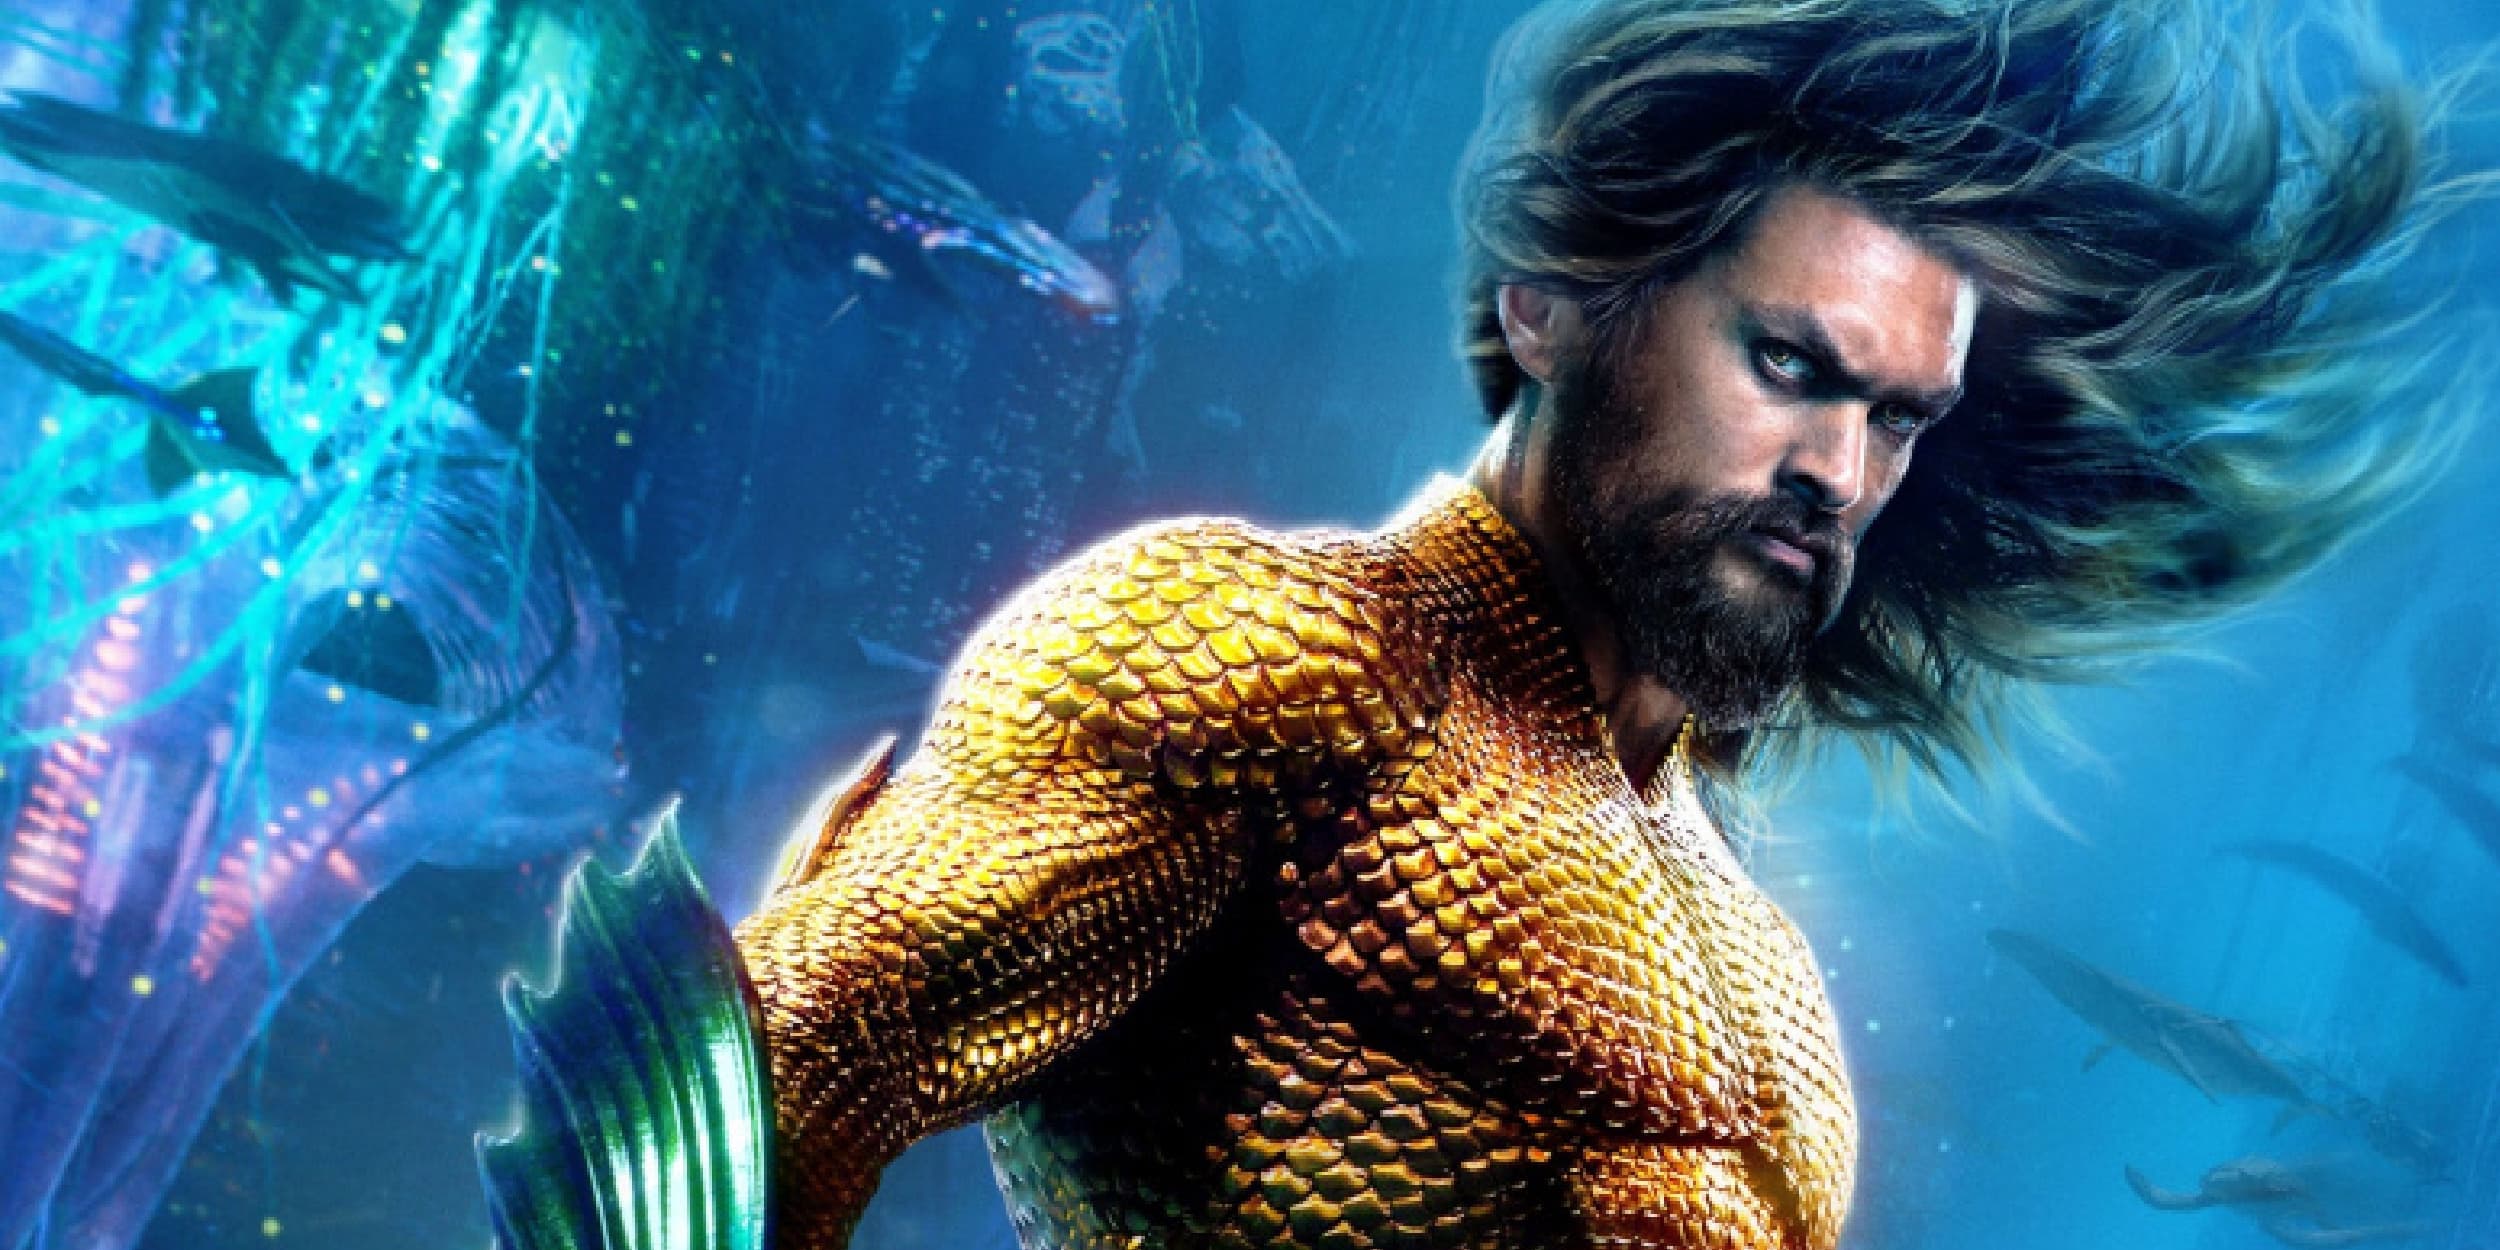 'Aquaman' holder tidsplanen uanset strejker: 'Aquaman' Part 2 holder sin planlagte premieredato